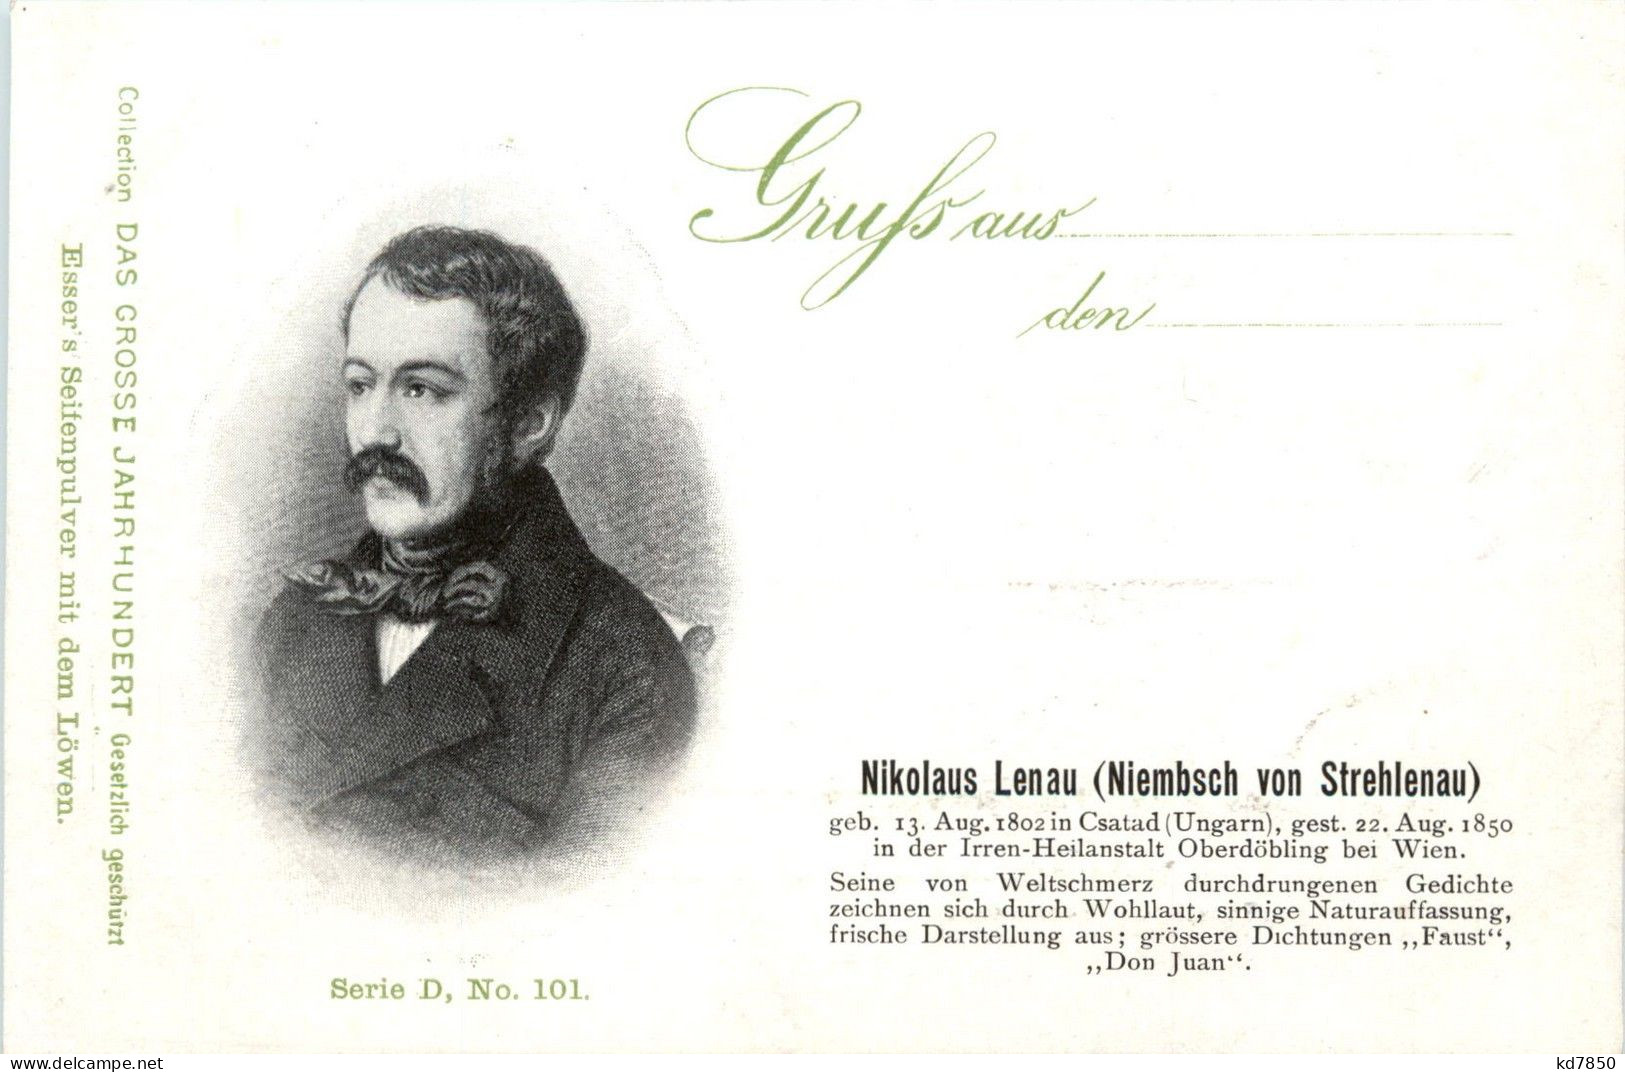 Nikolaus Lenau - Writers